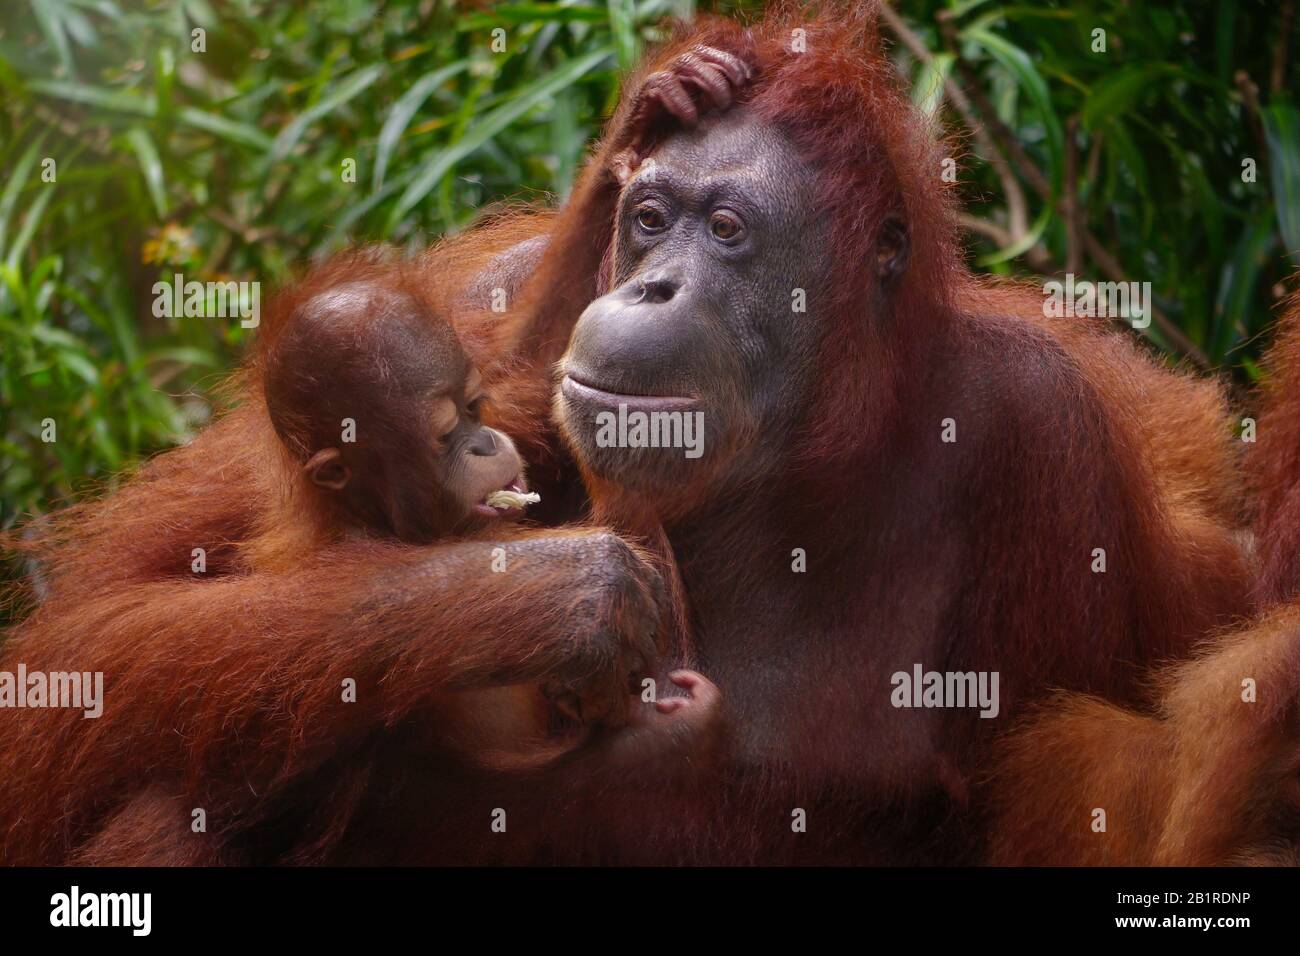 Bel ritratto di una madre Sumatran orangutan (Pongo abelii) che tiene il suo bambino nel suo braccio, guardando come mangia un pezzo di canna da zucchero. Foto Stock